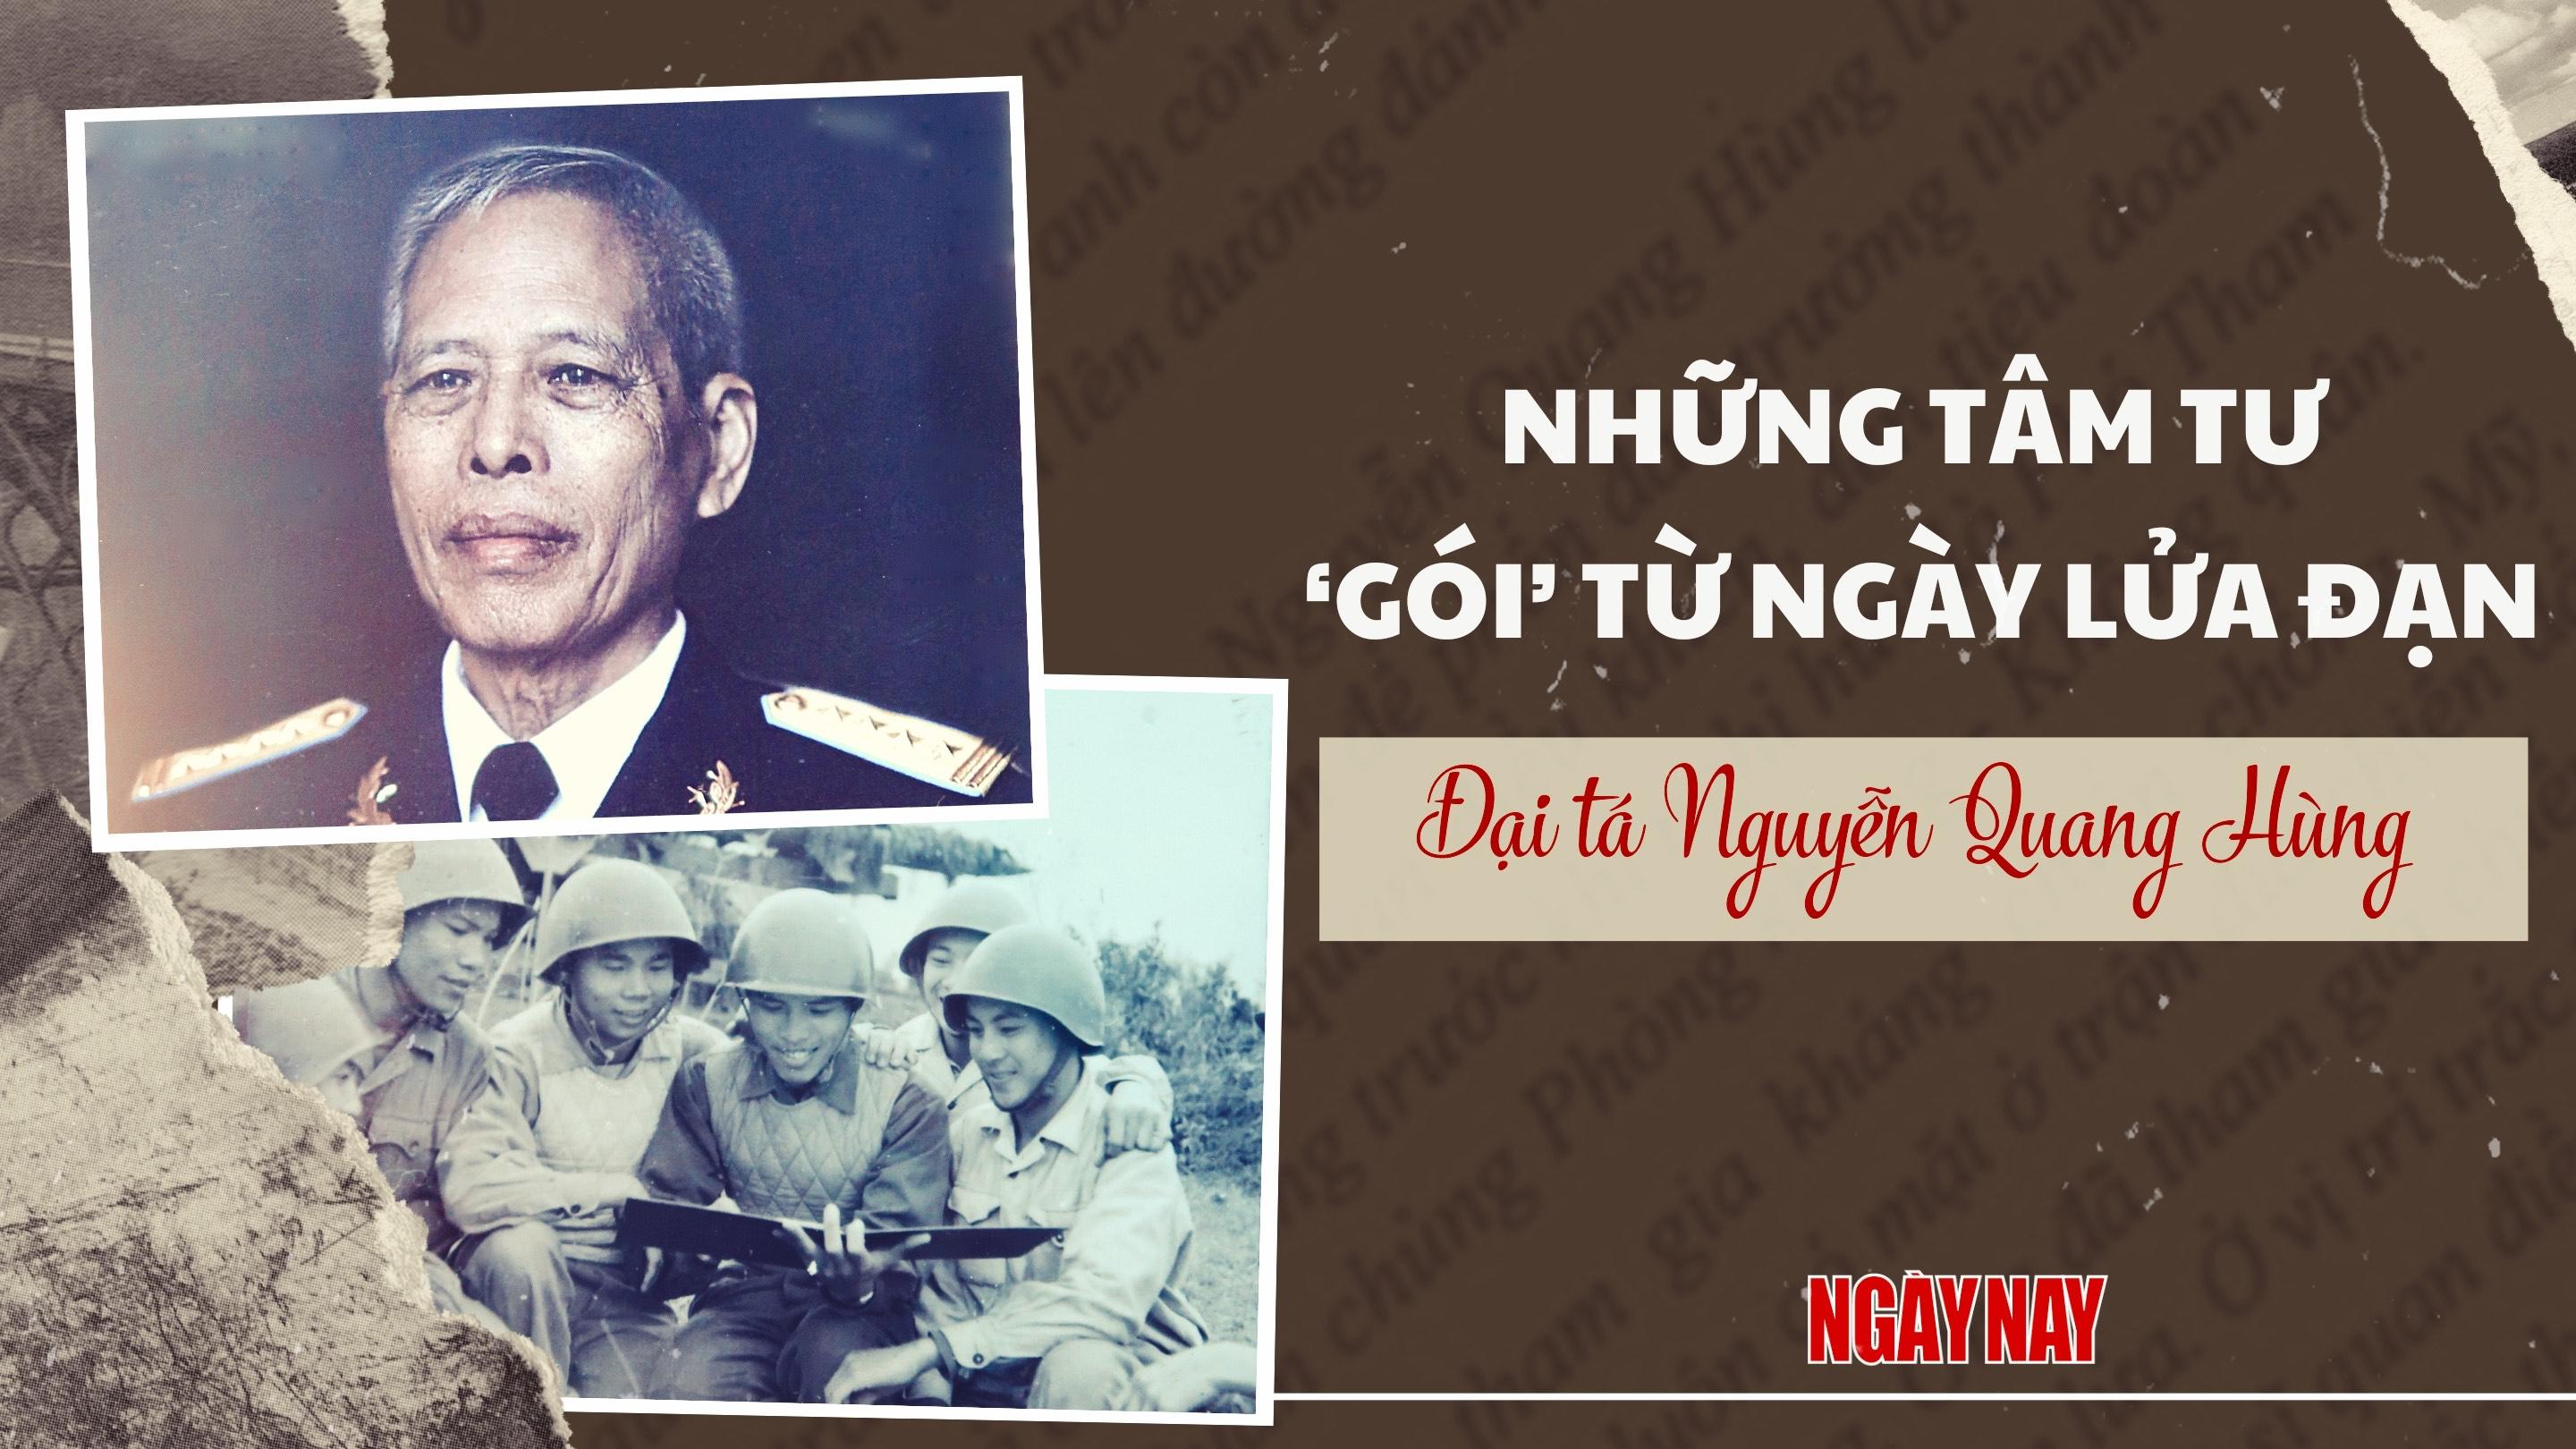 Đại tá Nguyễn Quang Hùng: Những tâm tư ‘gói’ từ ngày lửa đạn